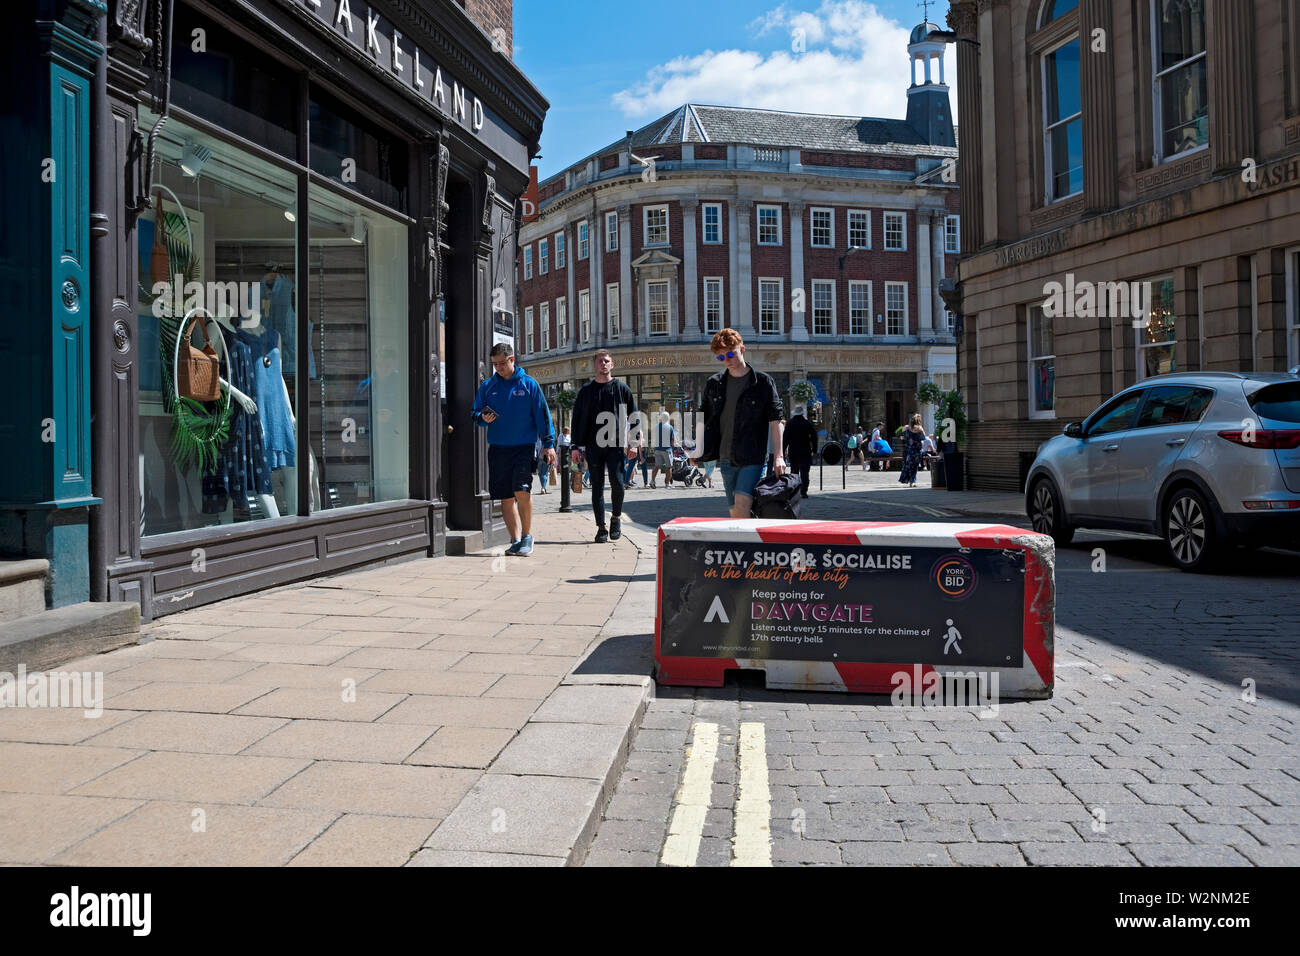 Véhicule antiterroriste béton barrière de route blocs dans le centre ville rue York North Yorkshire Angleterre Royaume-Uni GB Grande-Bretagne Banque D'Images